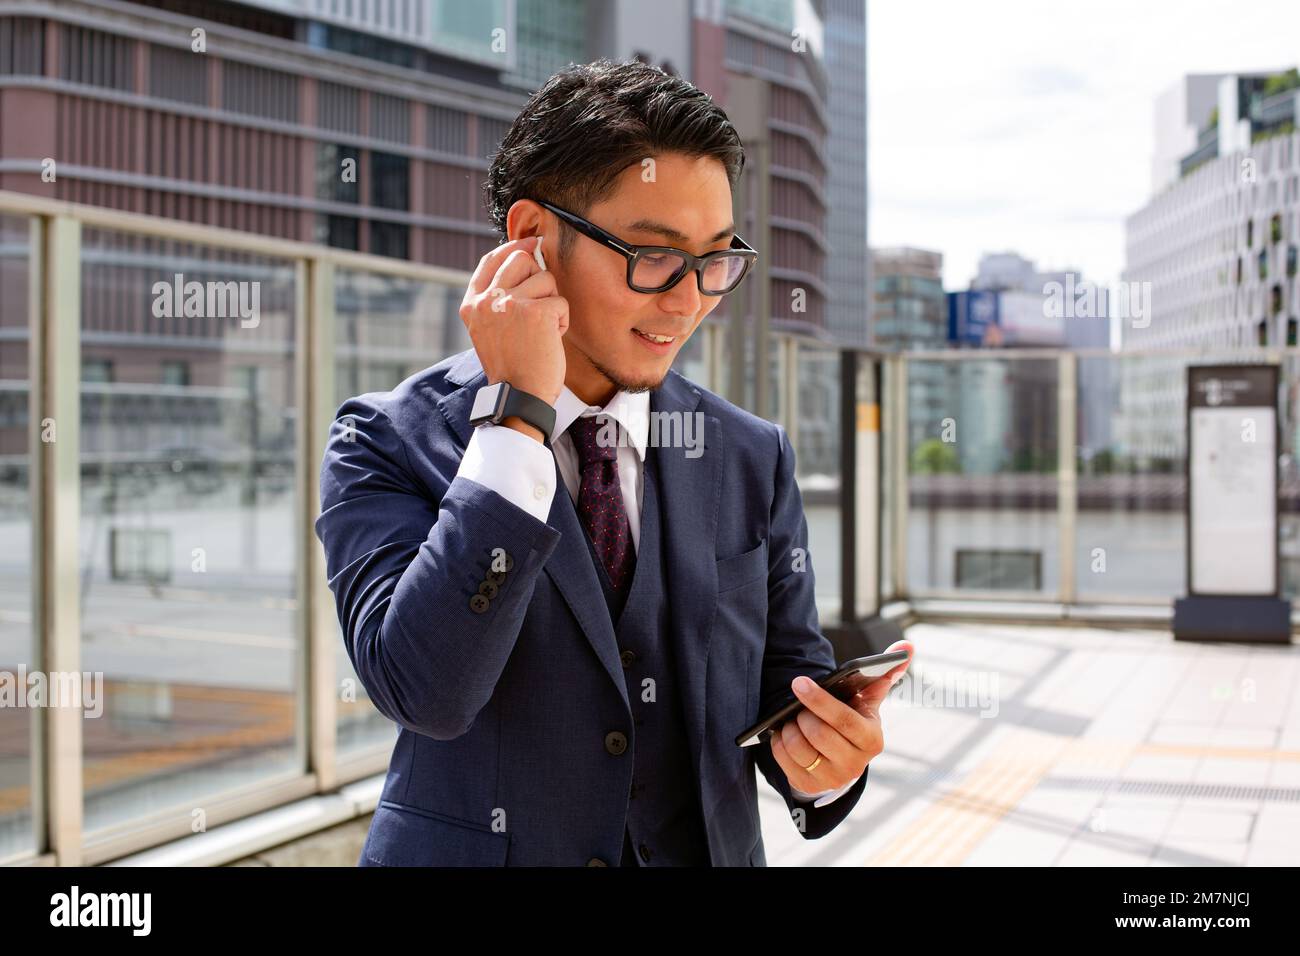 Un joven empresario en la ciudad, en movimiento, un hombre con un traje afuera, sosteniendo un móvil y su oreja, usando auriculares. Foto de stock